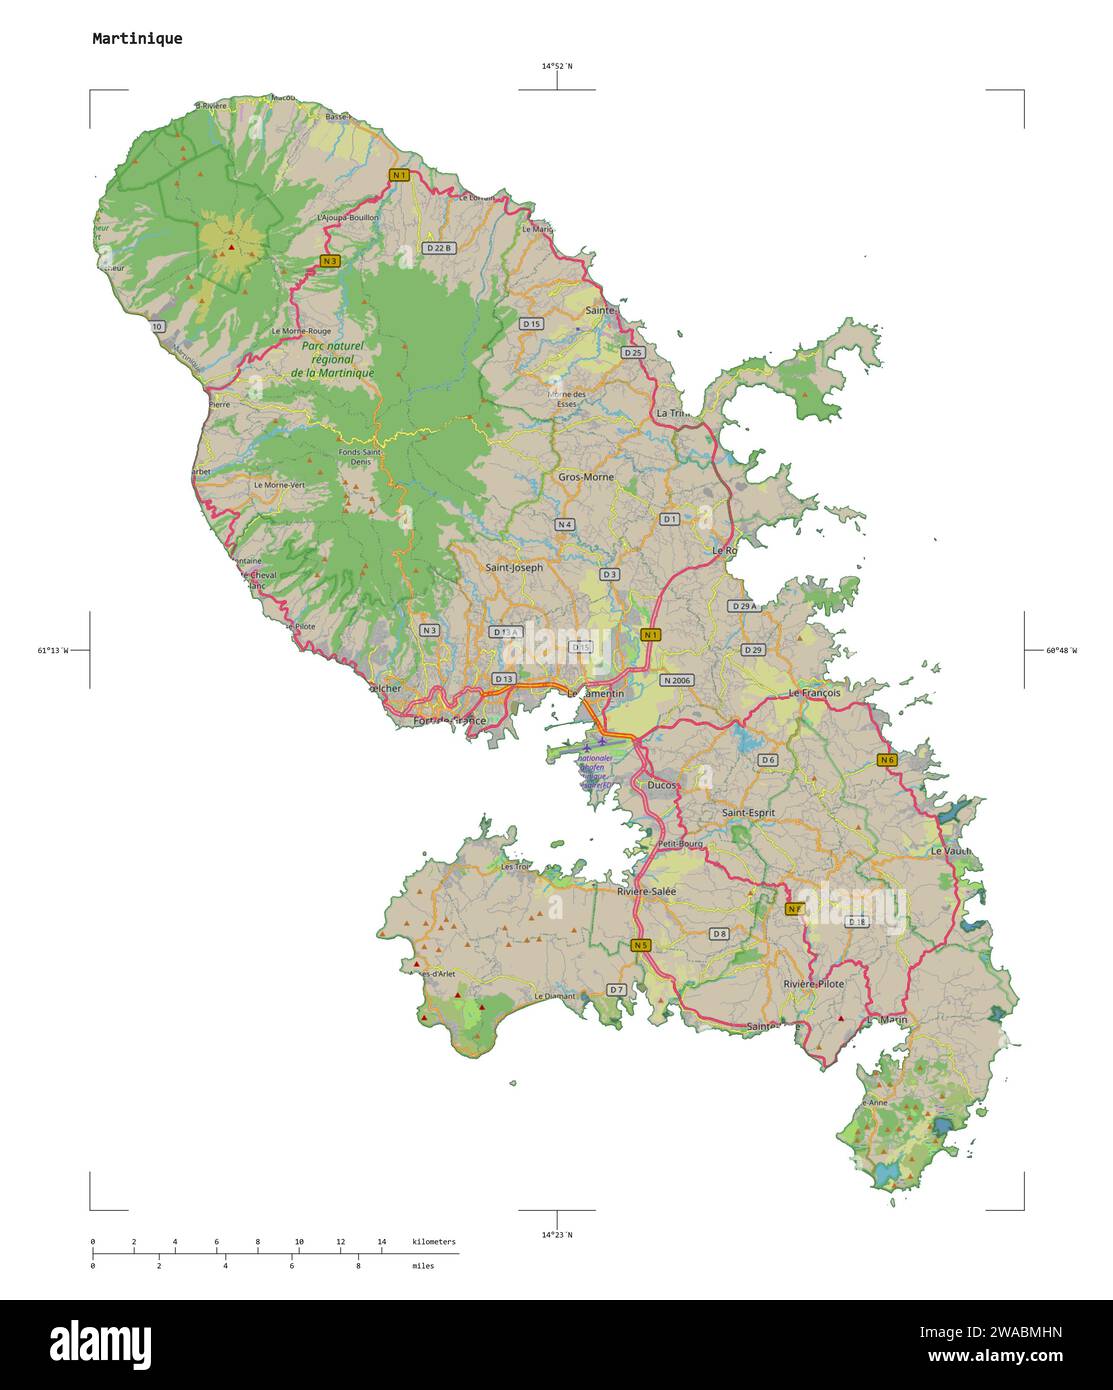 Forme d'une carte topographique, de style OSM Allemagne de la Martinique, avec l'échelle des distances et les coordonnées de la frontière de la carte, isolée sur blanc Banque D'Images